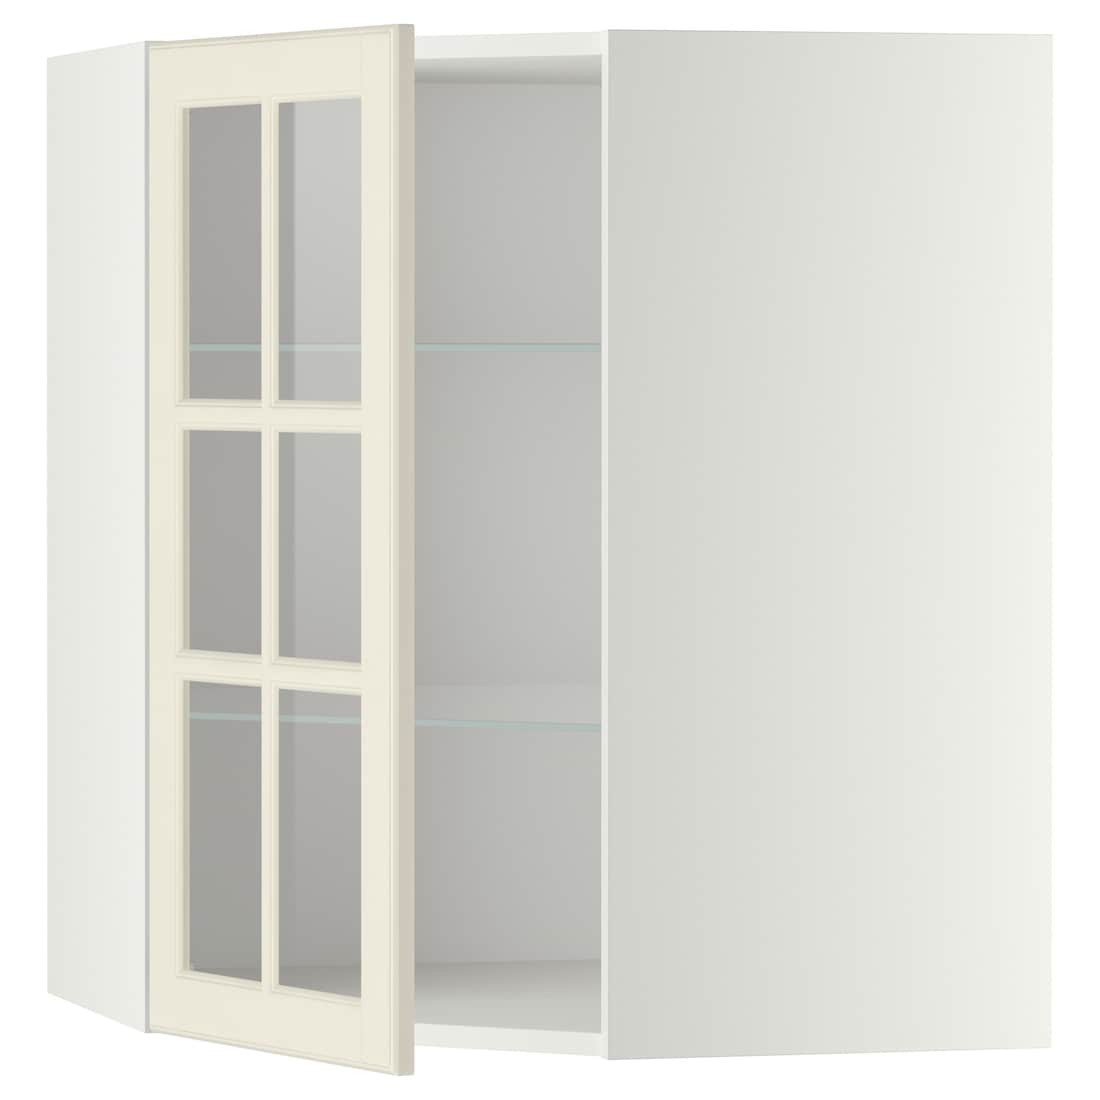 IKEA METOD МЕТОД Угловой настенный шкаф с полками / стеклянная дверь, белый / Bodbyn кремовый, 68x80 см 59394986 593.949.86